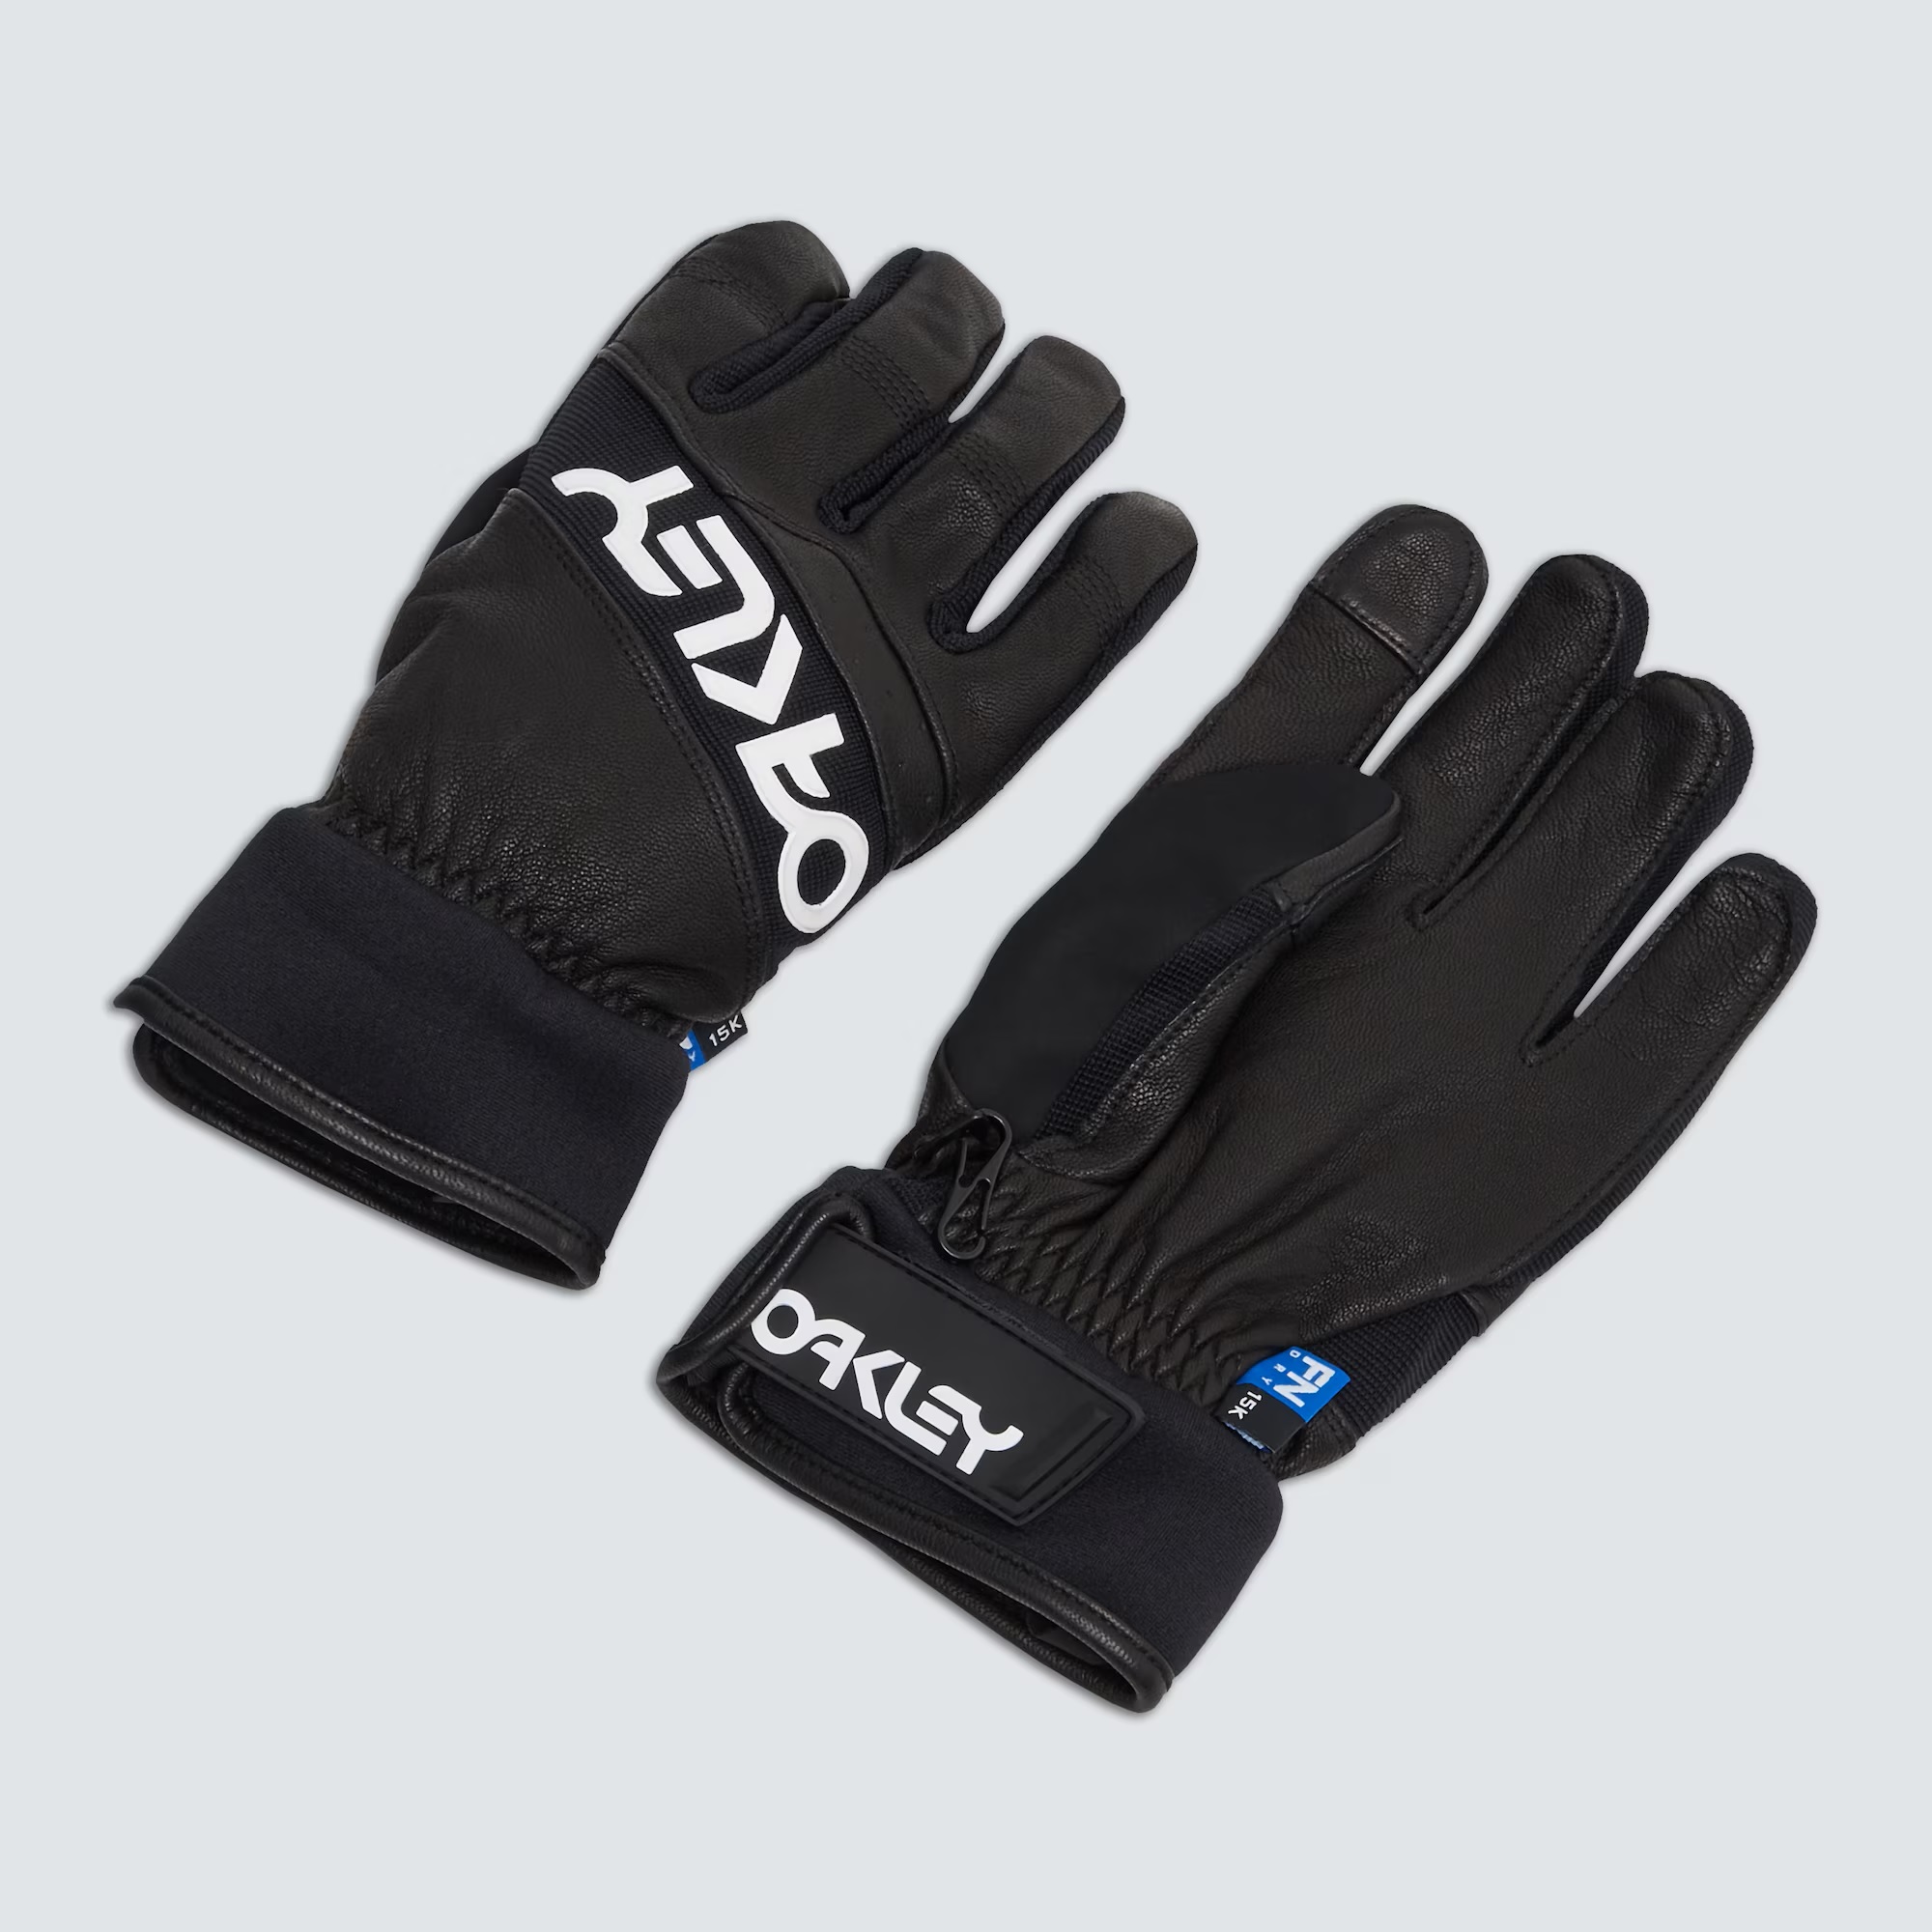 Oakley Factory Winter Glove 2